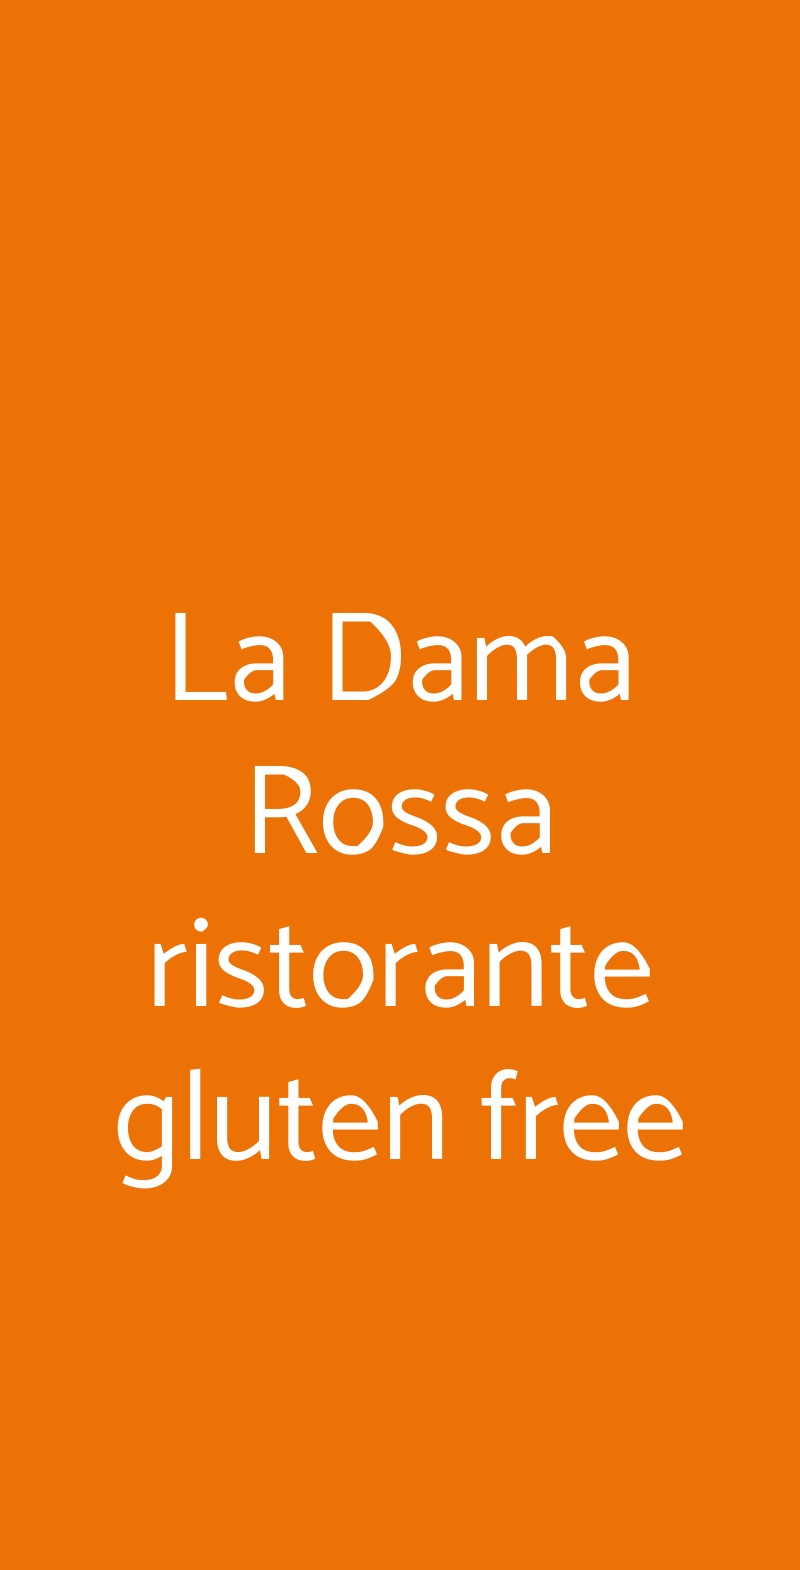 La Dama Rossa ristorante gluten free Modena menù 1 pagina